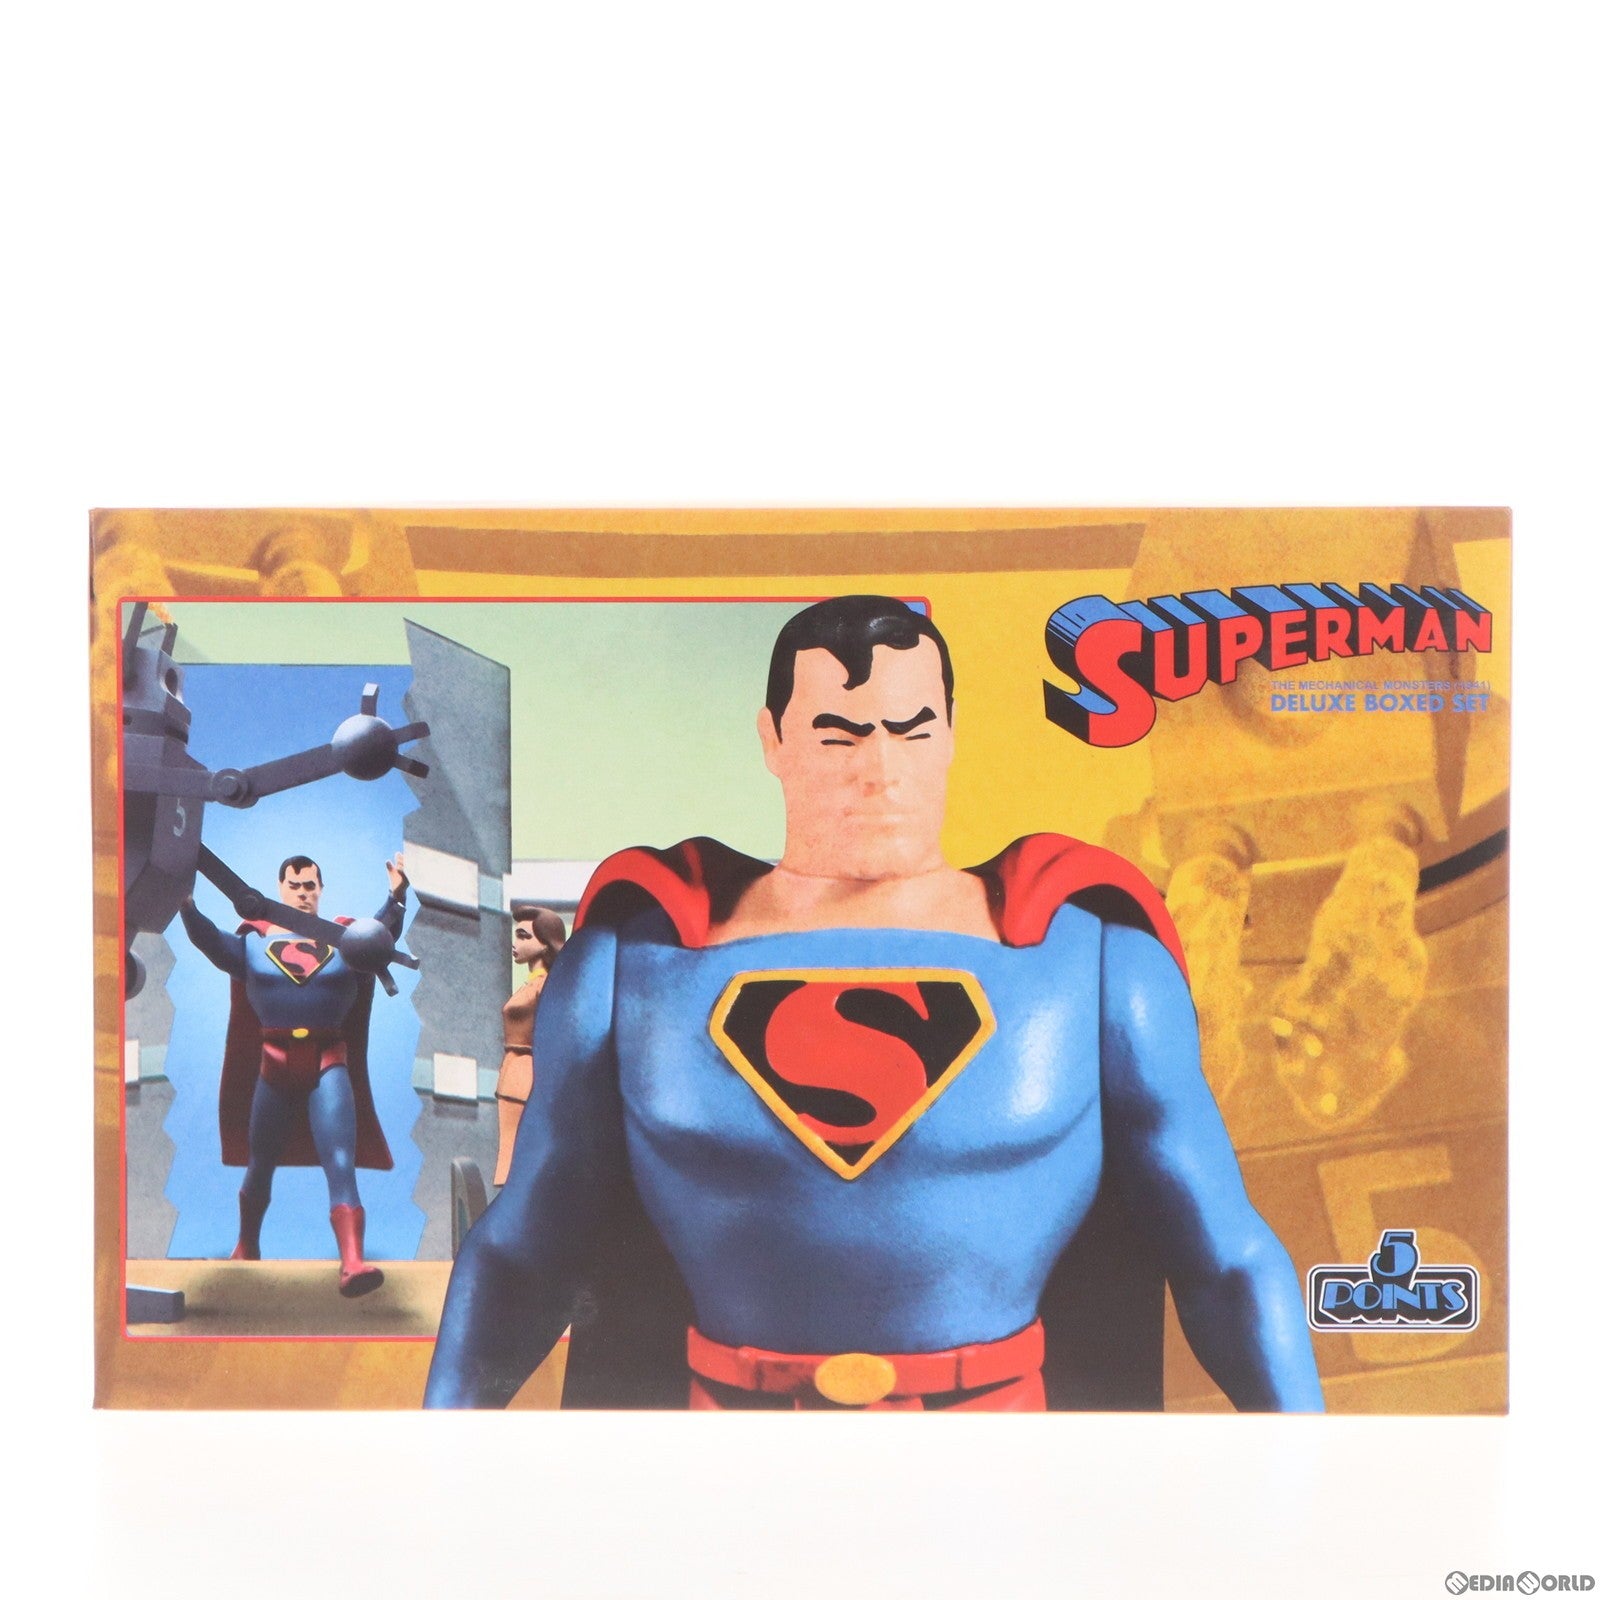 【中古即納】[FIG]5ポイント スーパーマン 1941 アニメーション ザ・メカニカル・モンスターズ 3.75インチ アクションフィギュア  ボックスセット メズコトイズ(20211210)